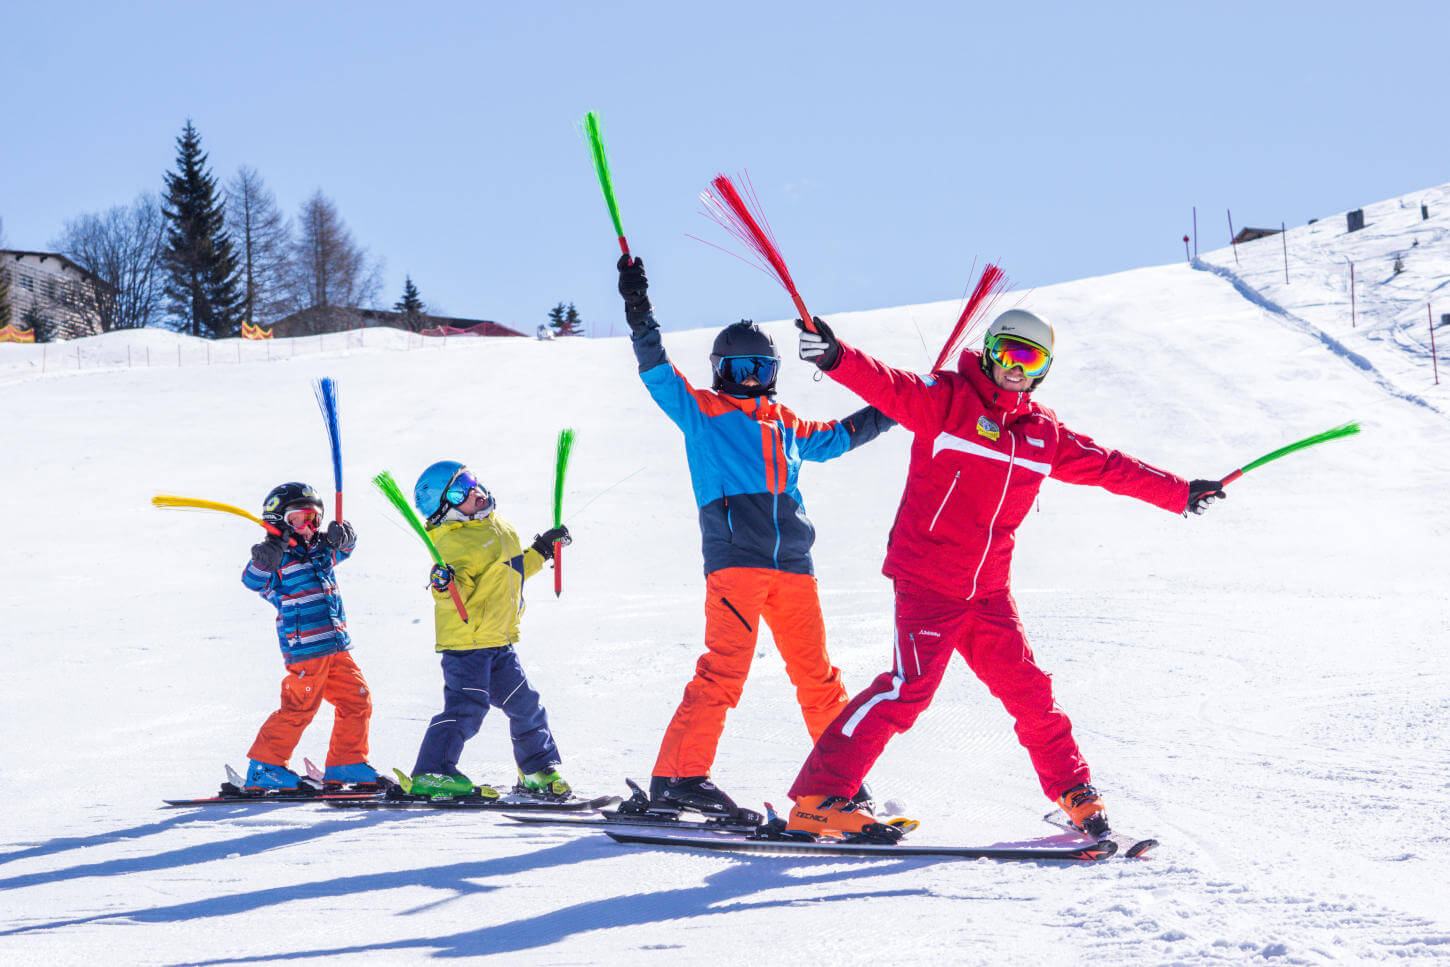 Familienskilehrer - Familienskitag - Familienausflug - Kinderskikurs - Skischule Gerlitzen - Filiale Feuerberg